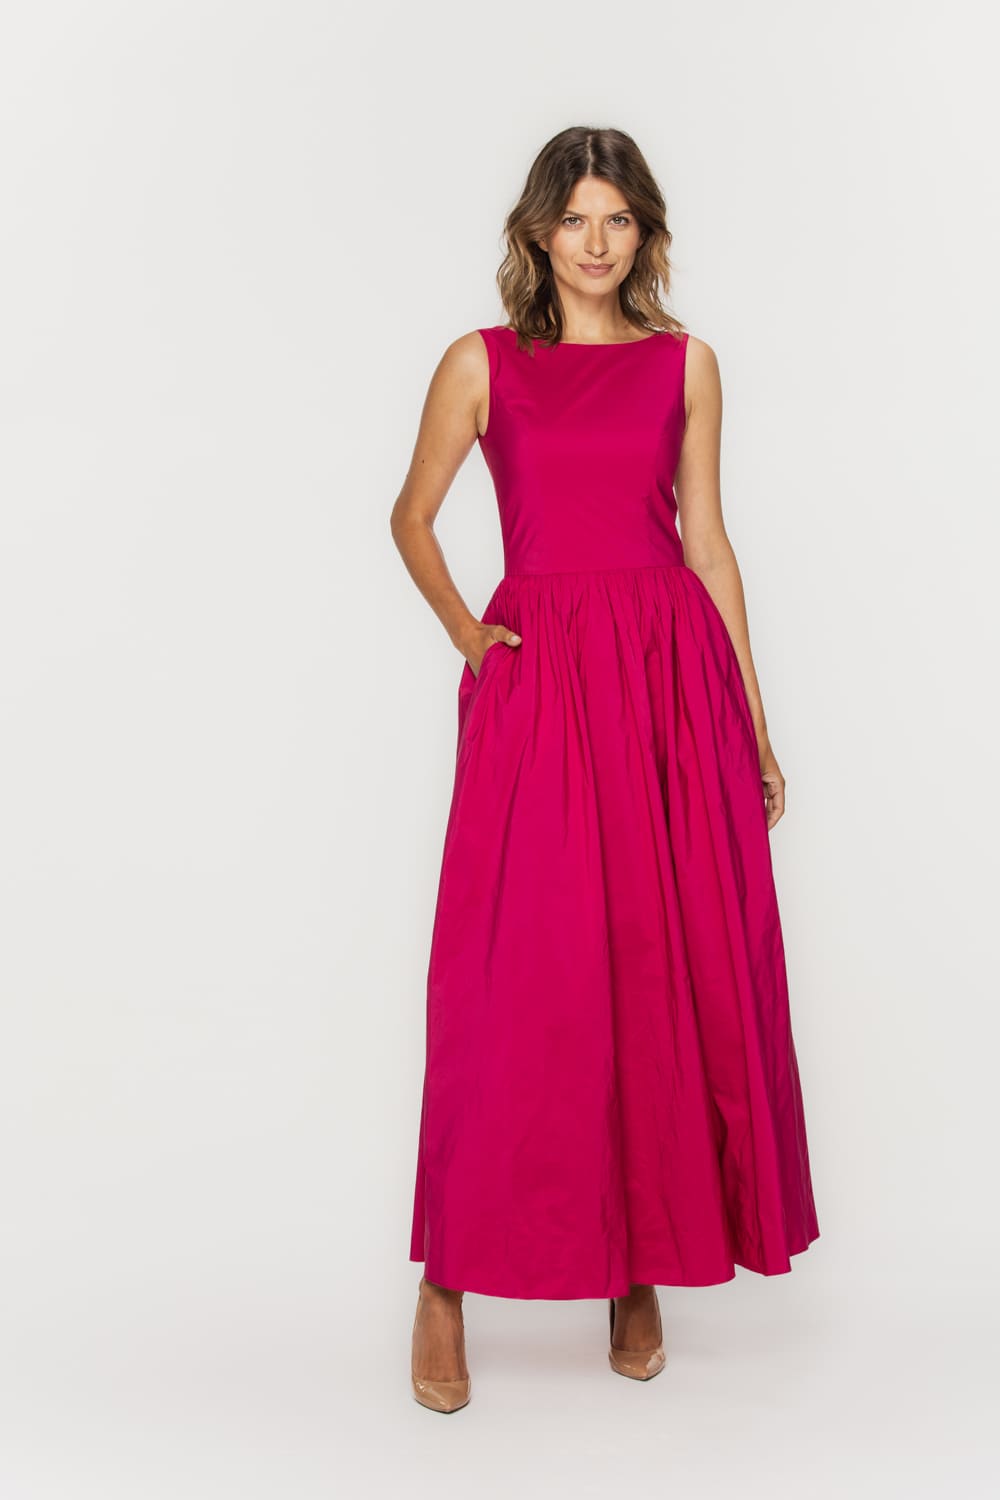 Długa różowa sukienka z tafty